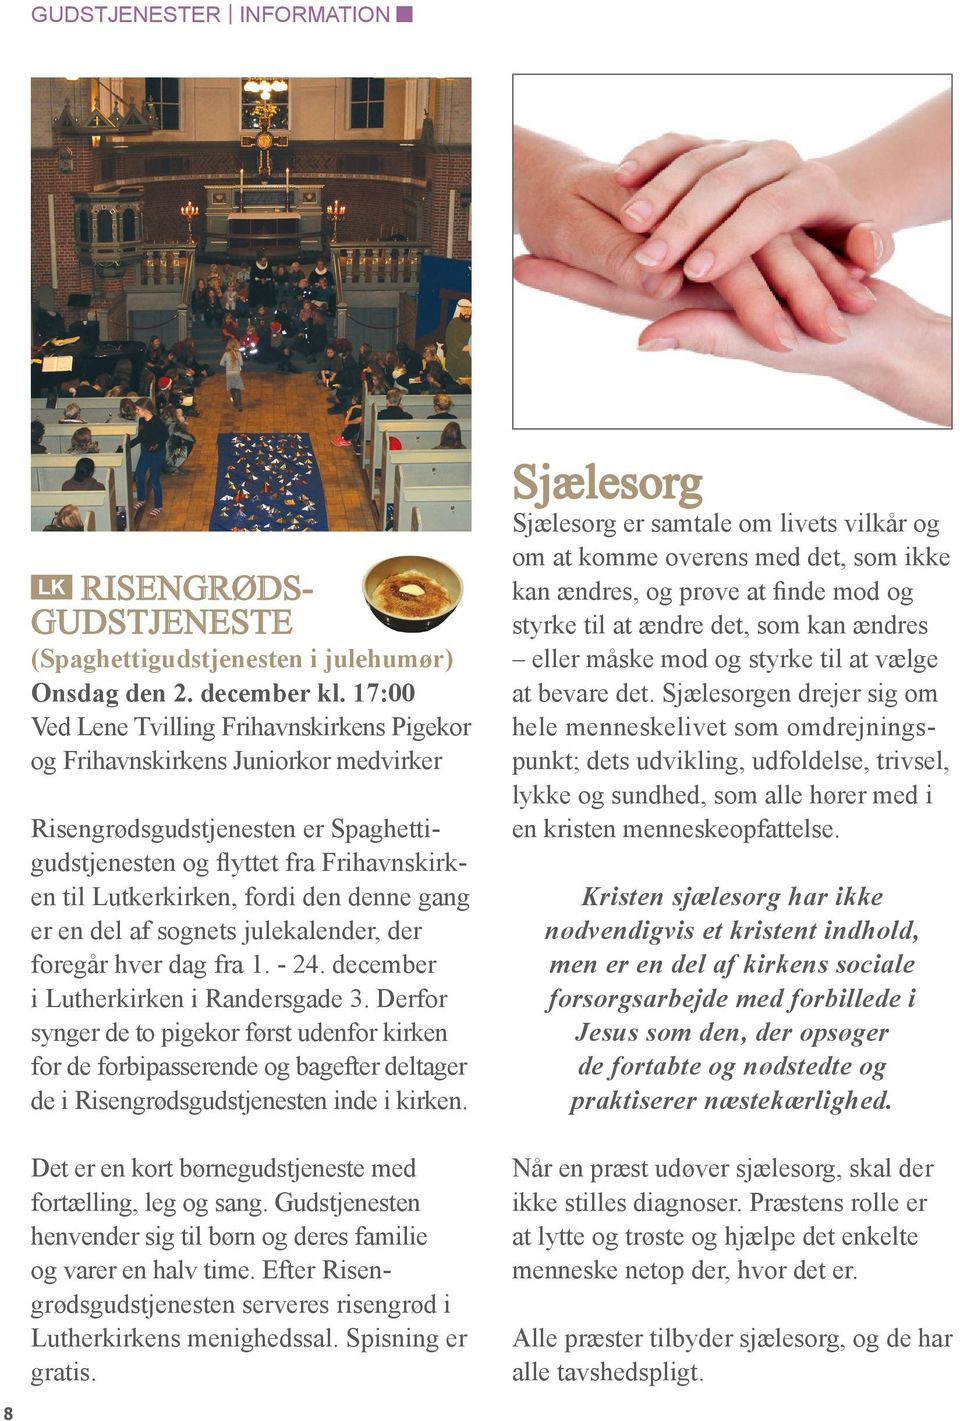 denne gang er en del af sognets julekalender, der foregår hver dag fra 1. - 24. december i Lutherkirken i Randersgade 3.